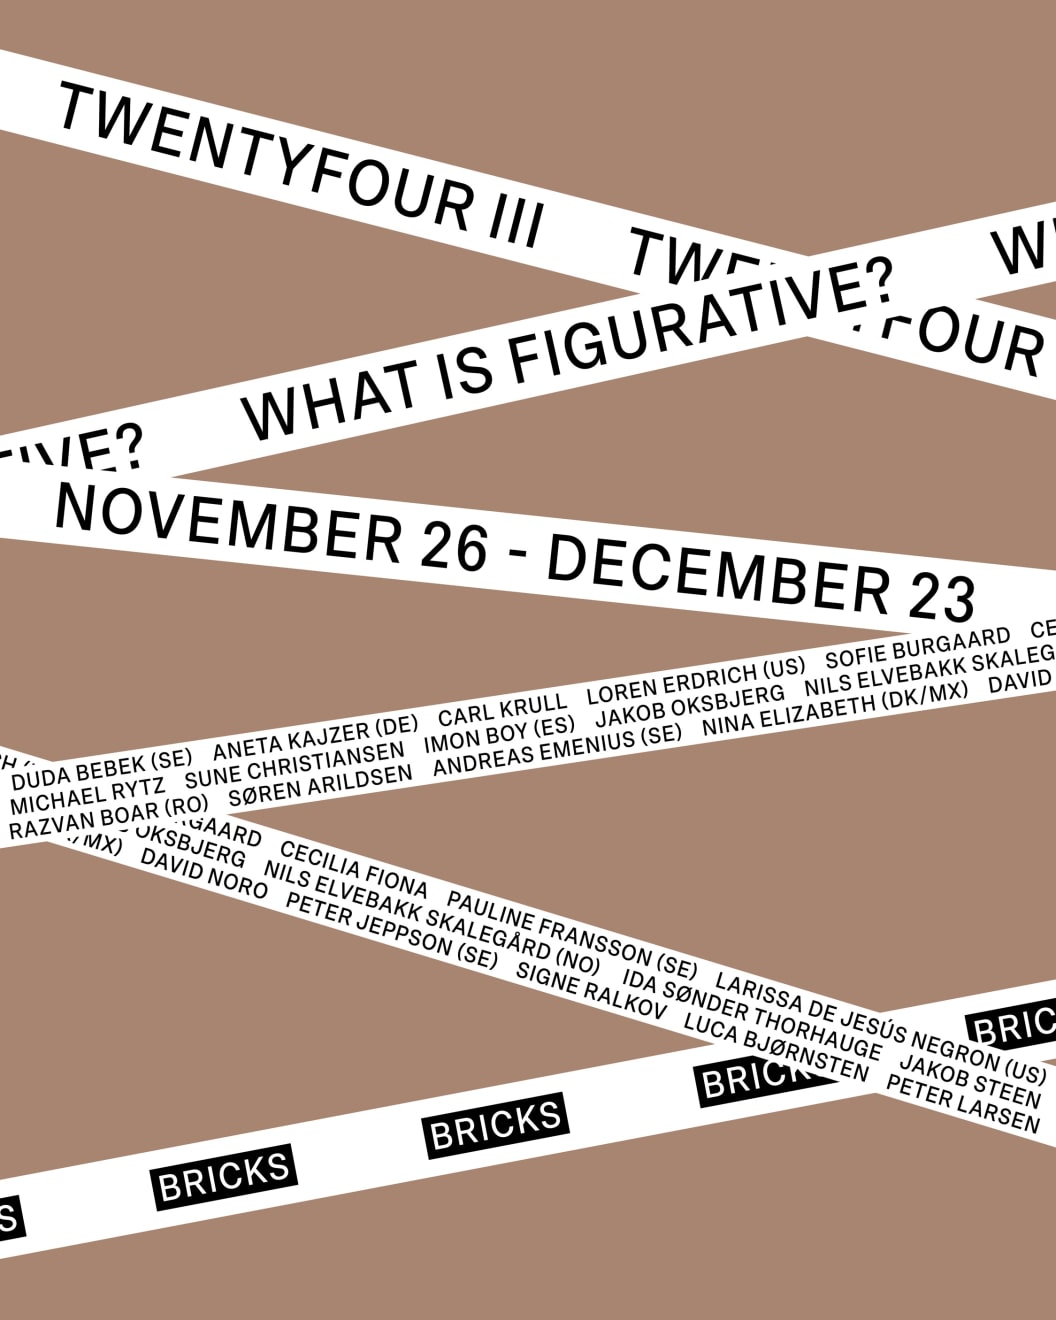 TWENTYFOUR III - What Is Figurative?